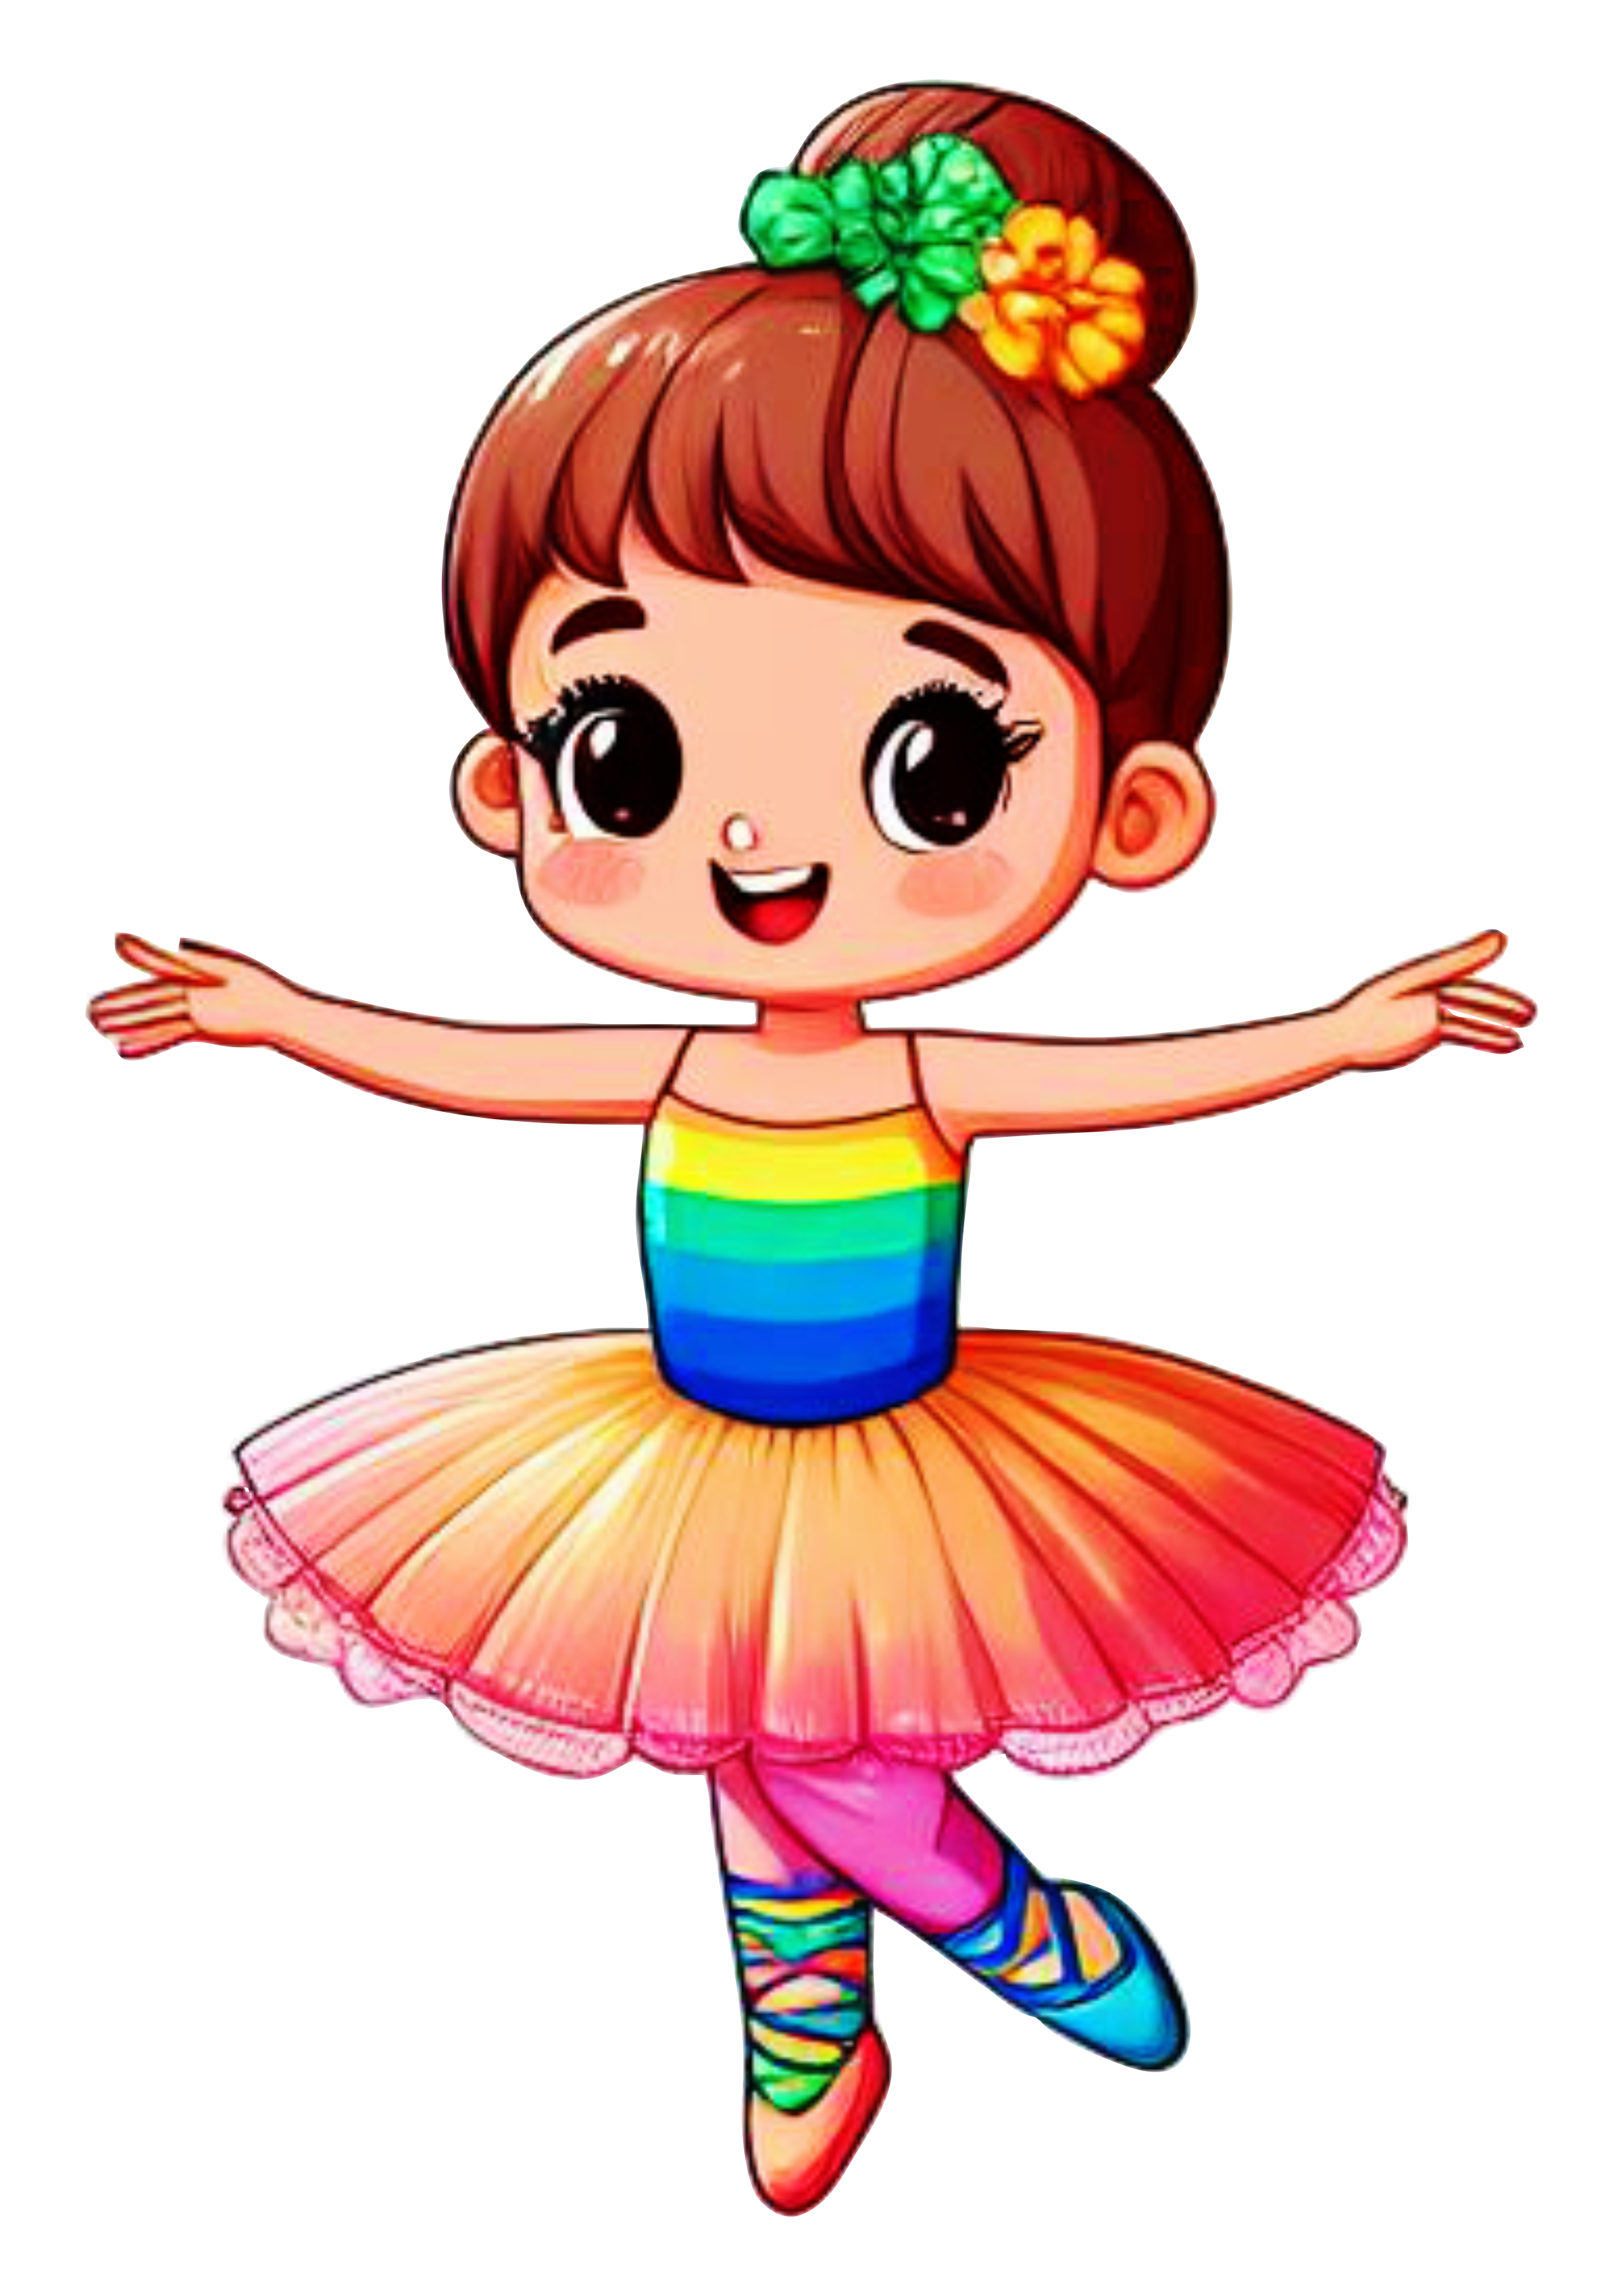 Bailarina menina com roupa colorida arco-íris desenho infantil png image design artes gráficas